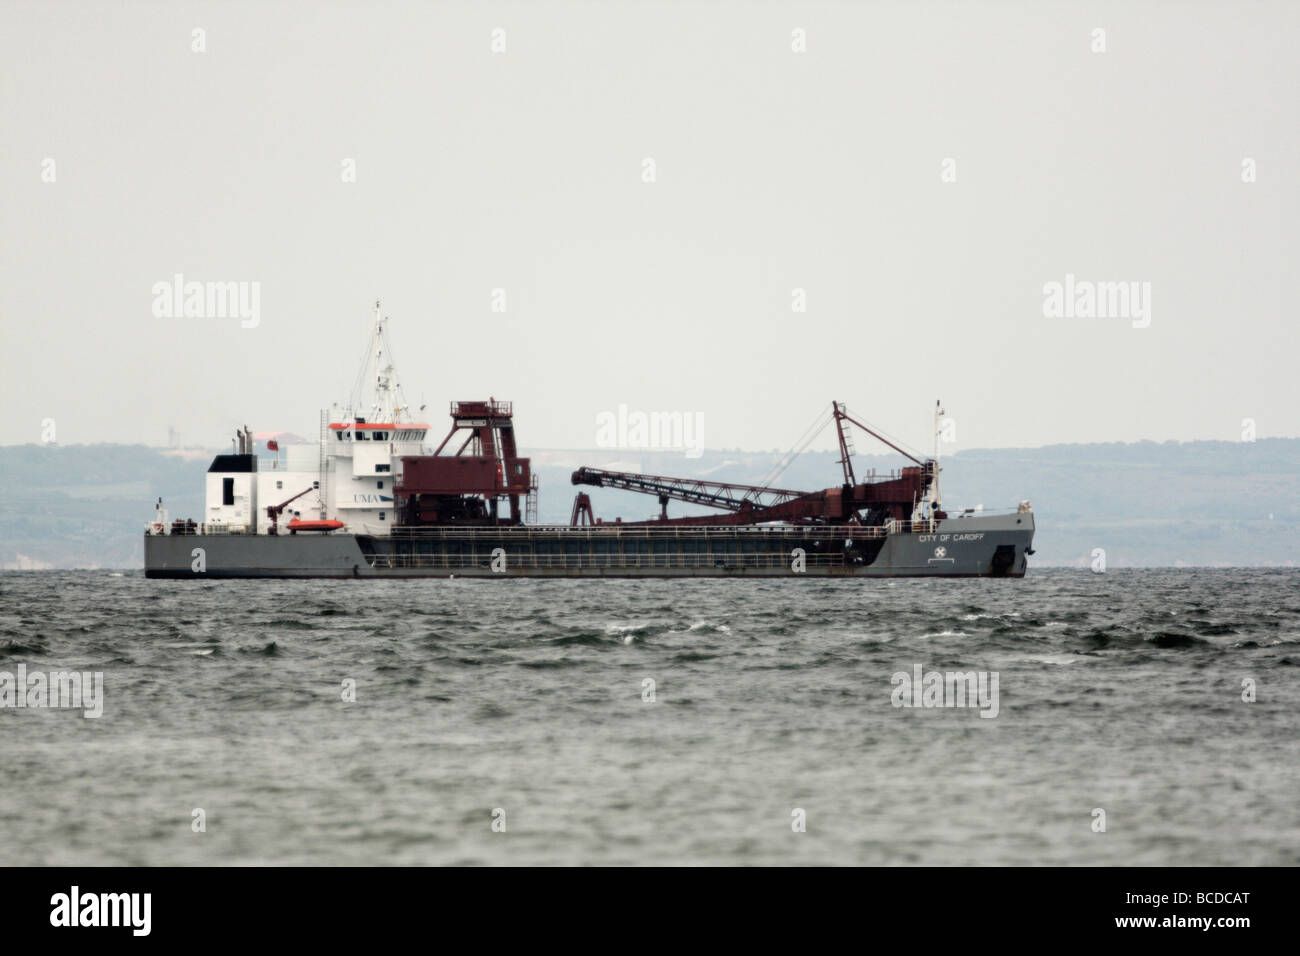 Boat, Ship, Tanker Stock Photo